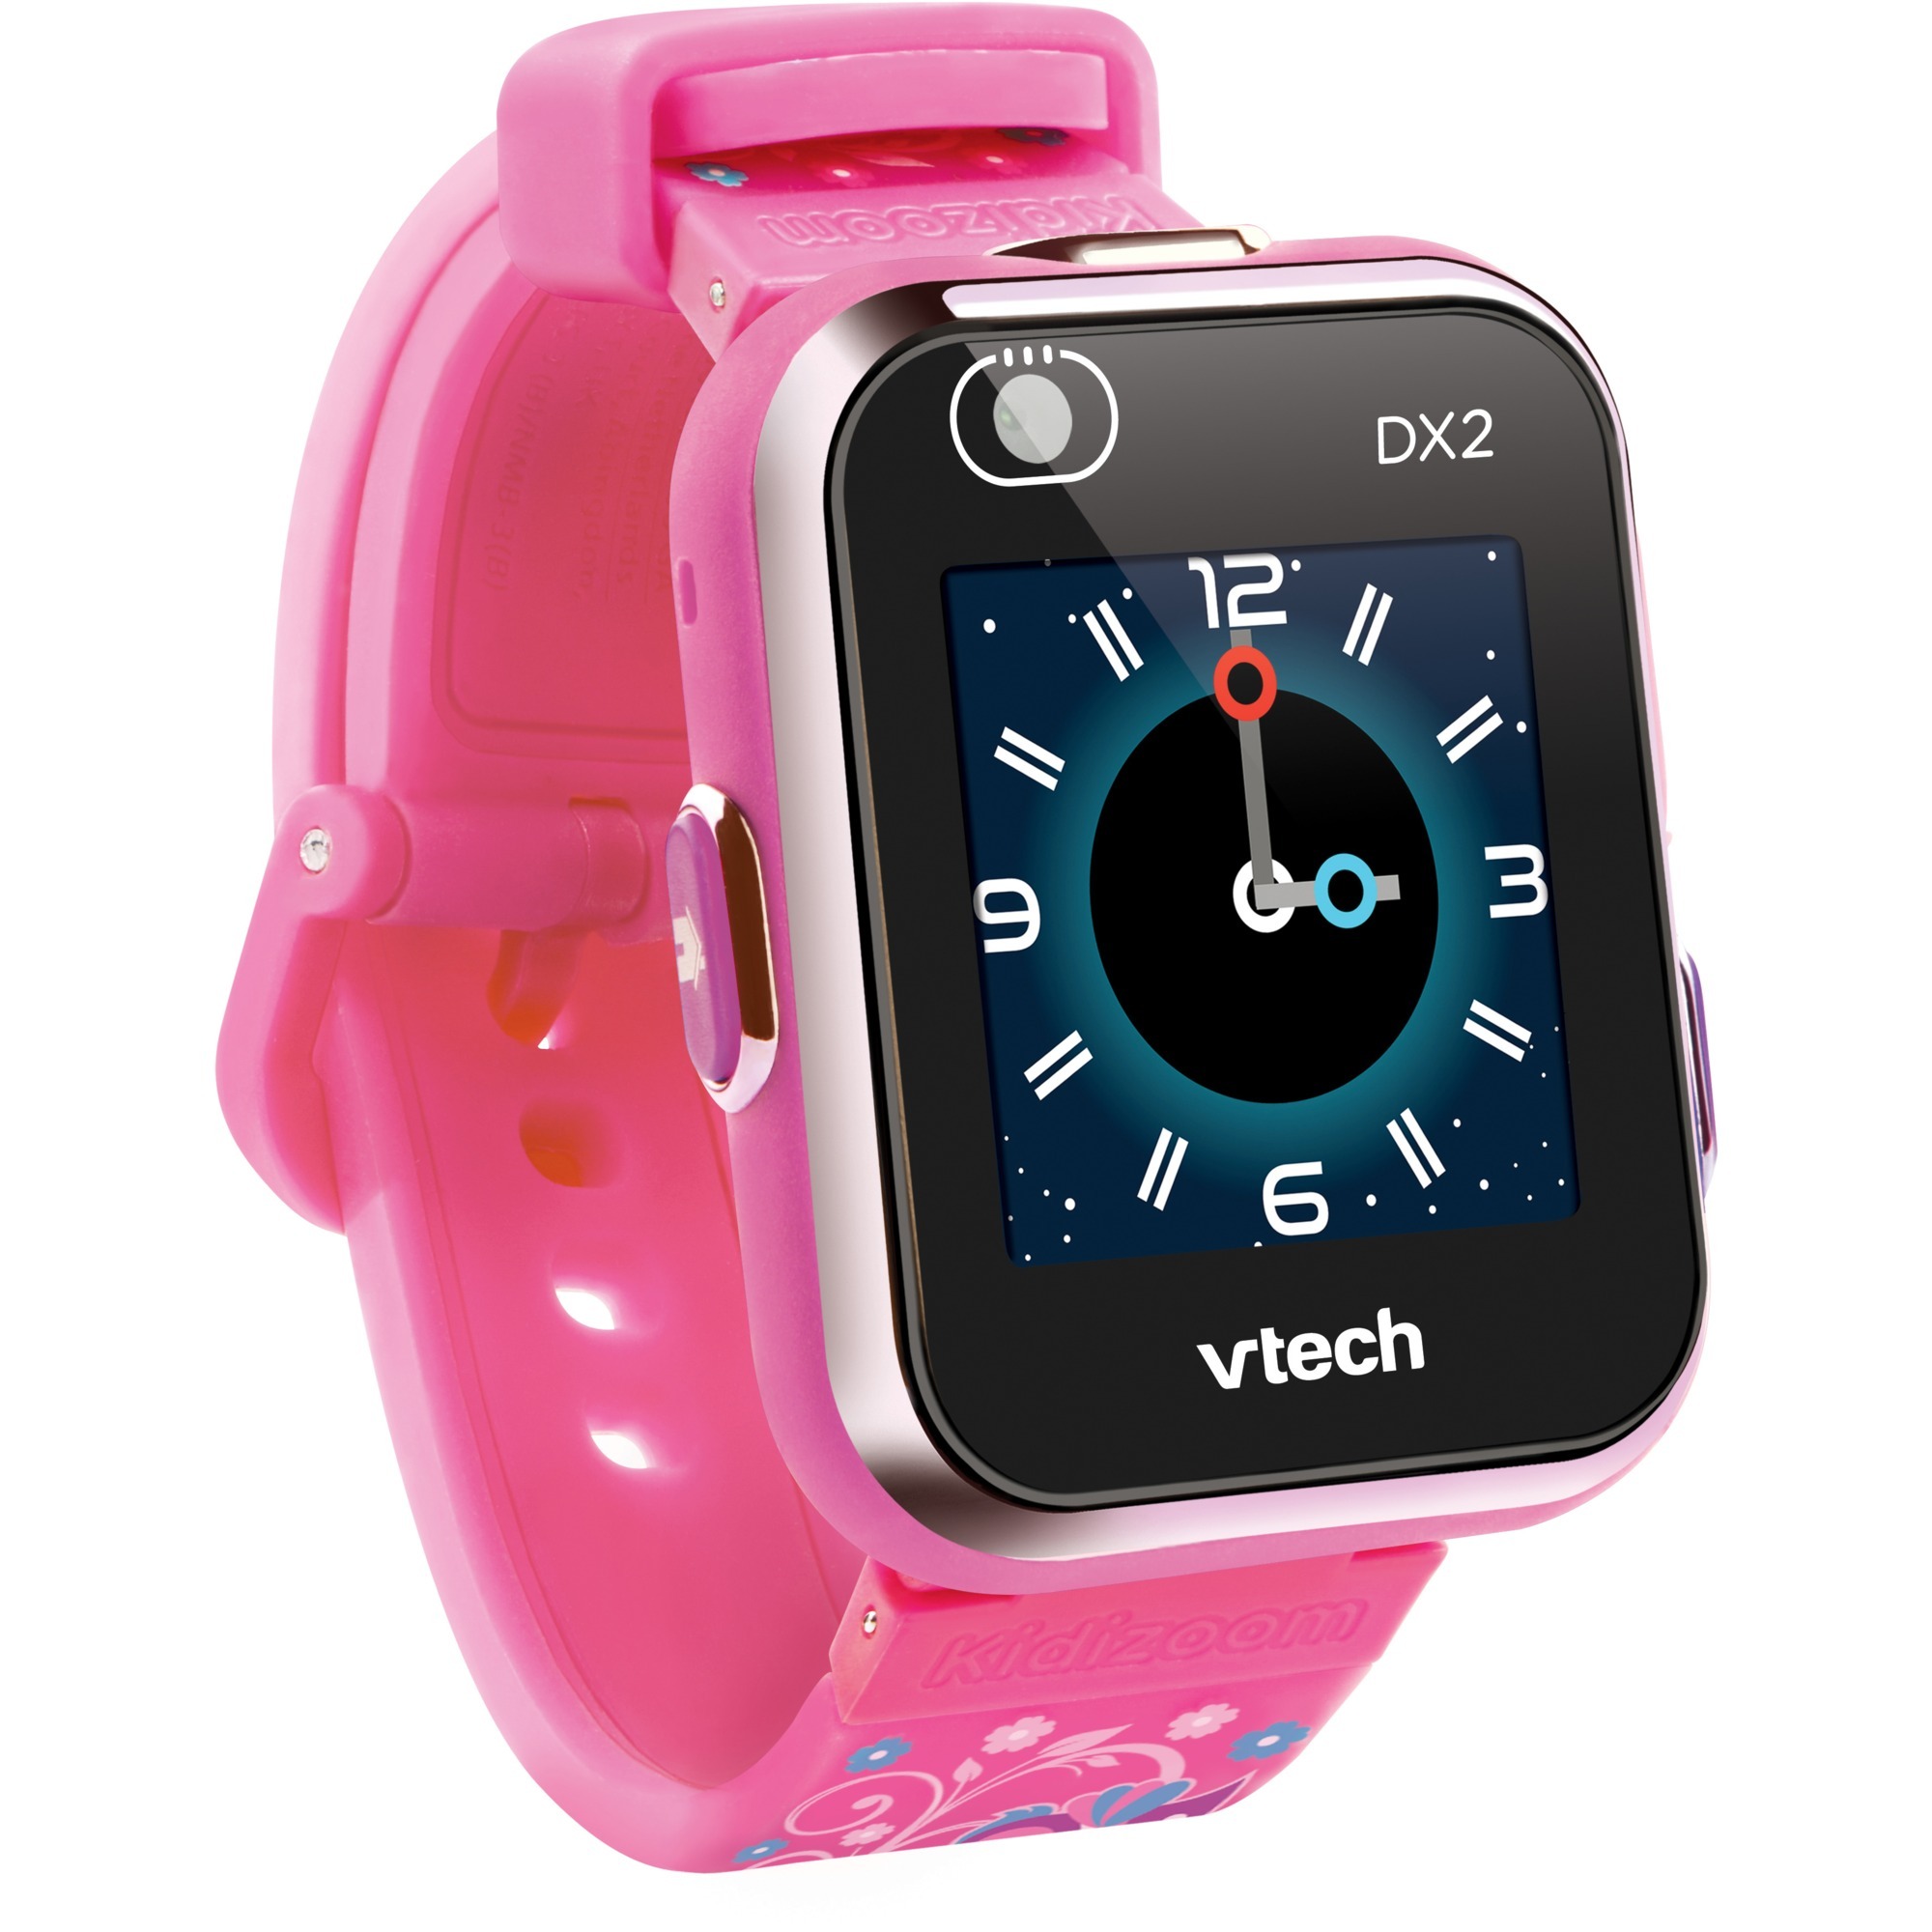 Image of Alternate - Kidizoom Smartwatch DX2 "Pink Blümchen" online einkaufen bei Alternate